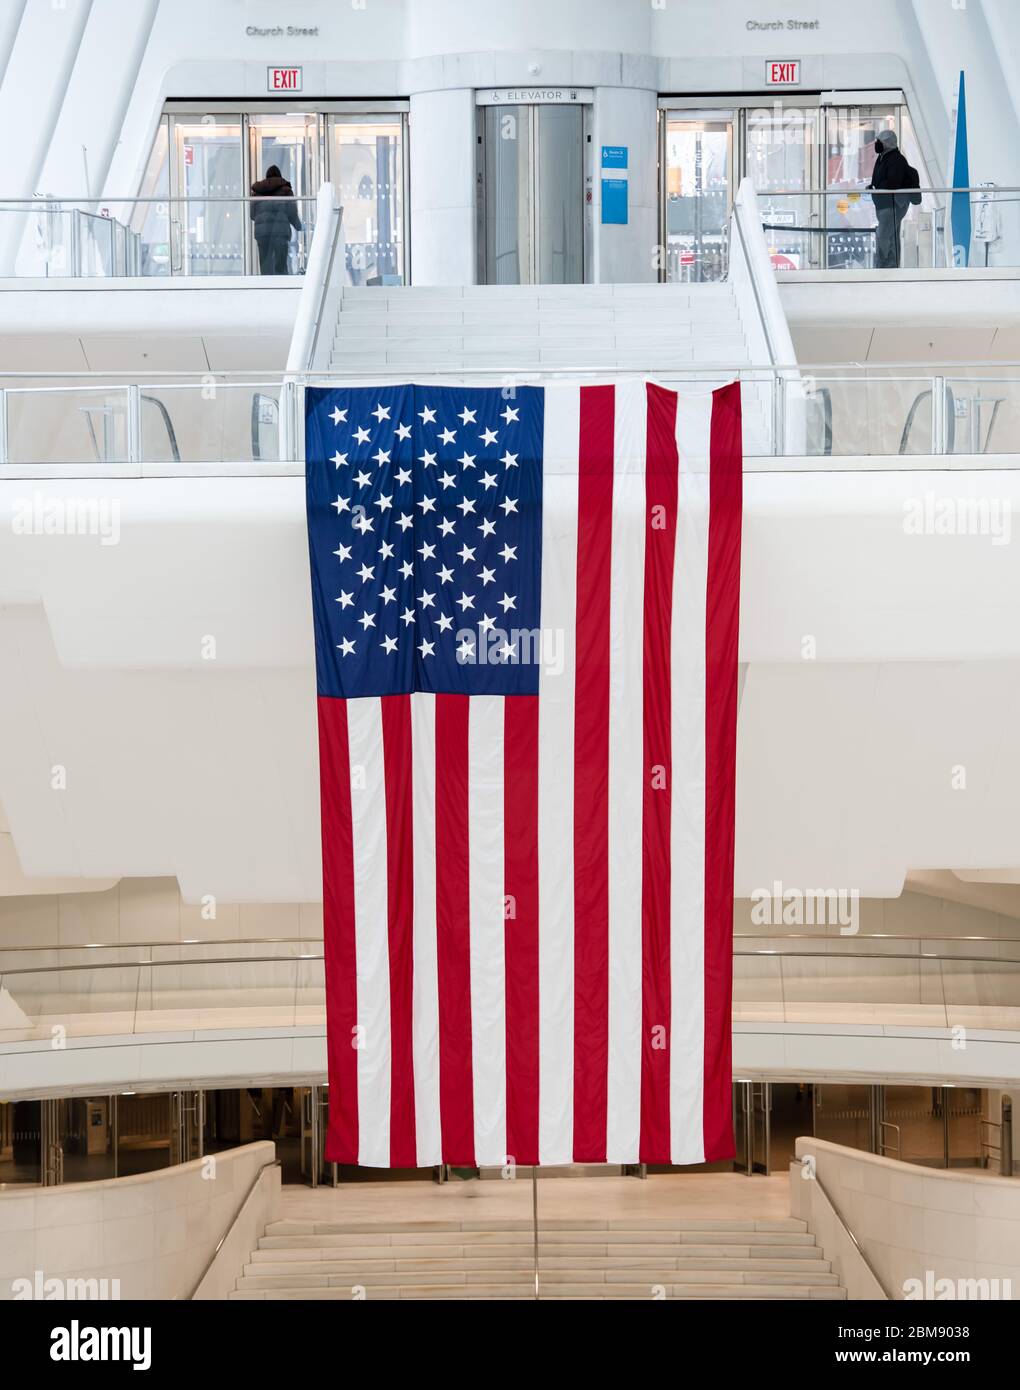 Riesige amerikanische Flagge, die stolz in einem Gebäude in Downtown Manhattan mit U-Bahn-Zugang, in der Nähe des World Trade Center, New York, USA, hängt. Stockfoto